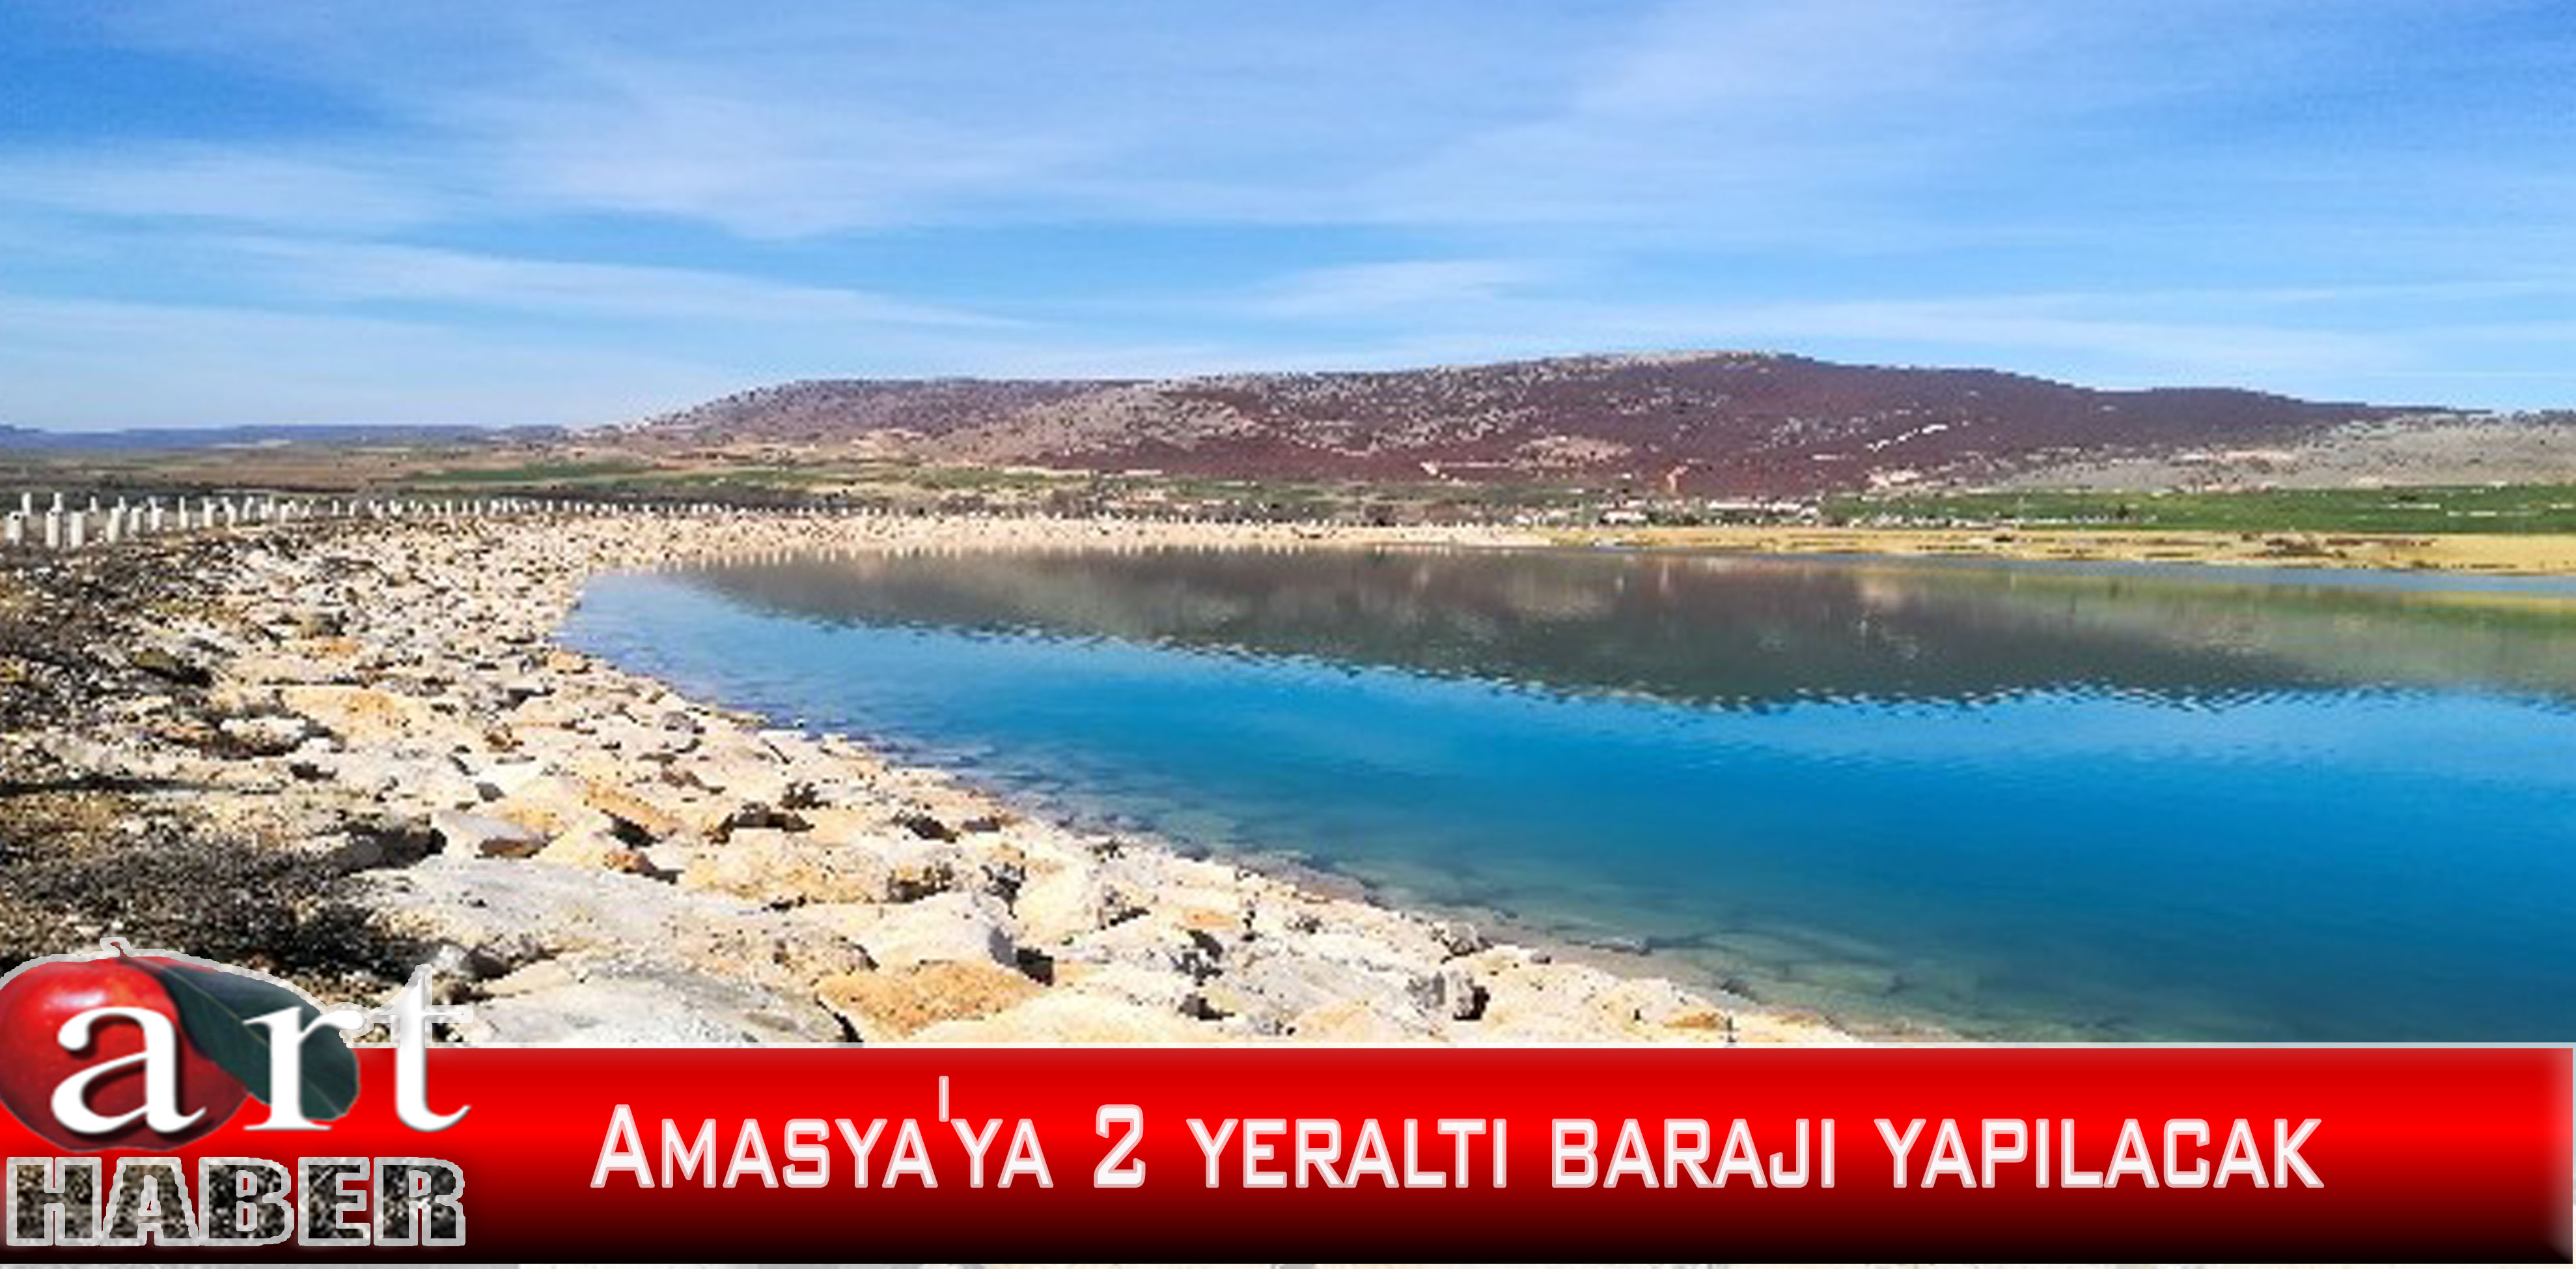 Amasya’ya 2 yeraltı barajı yapılacak